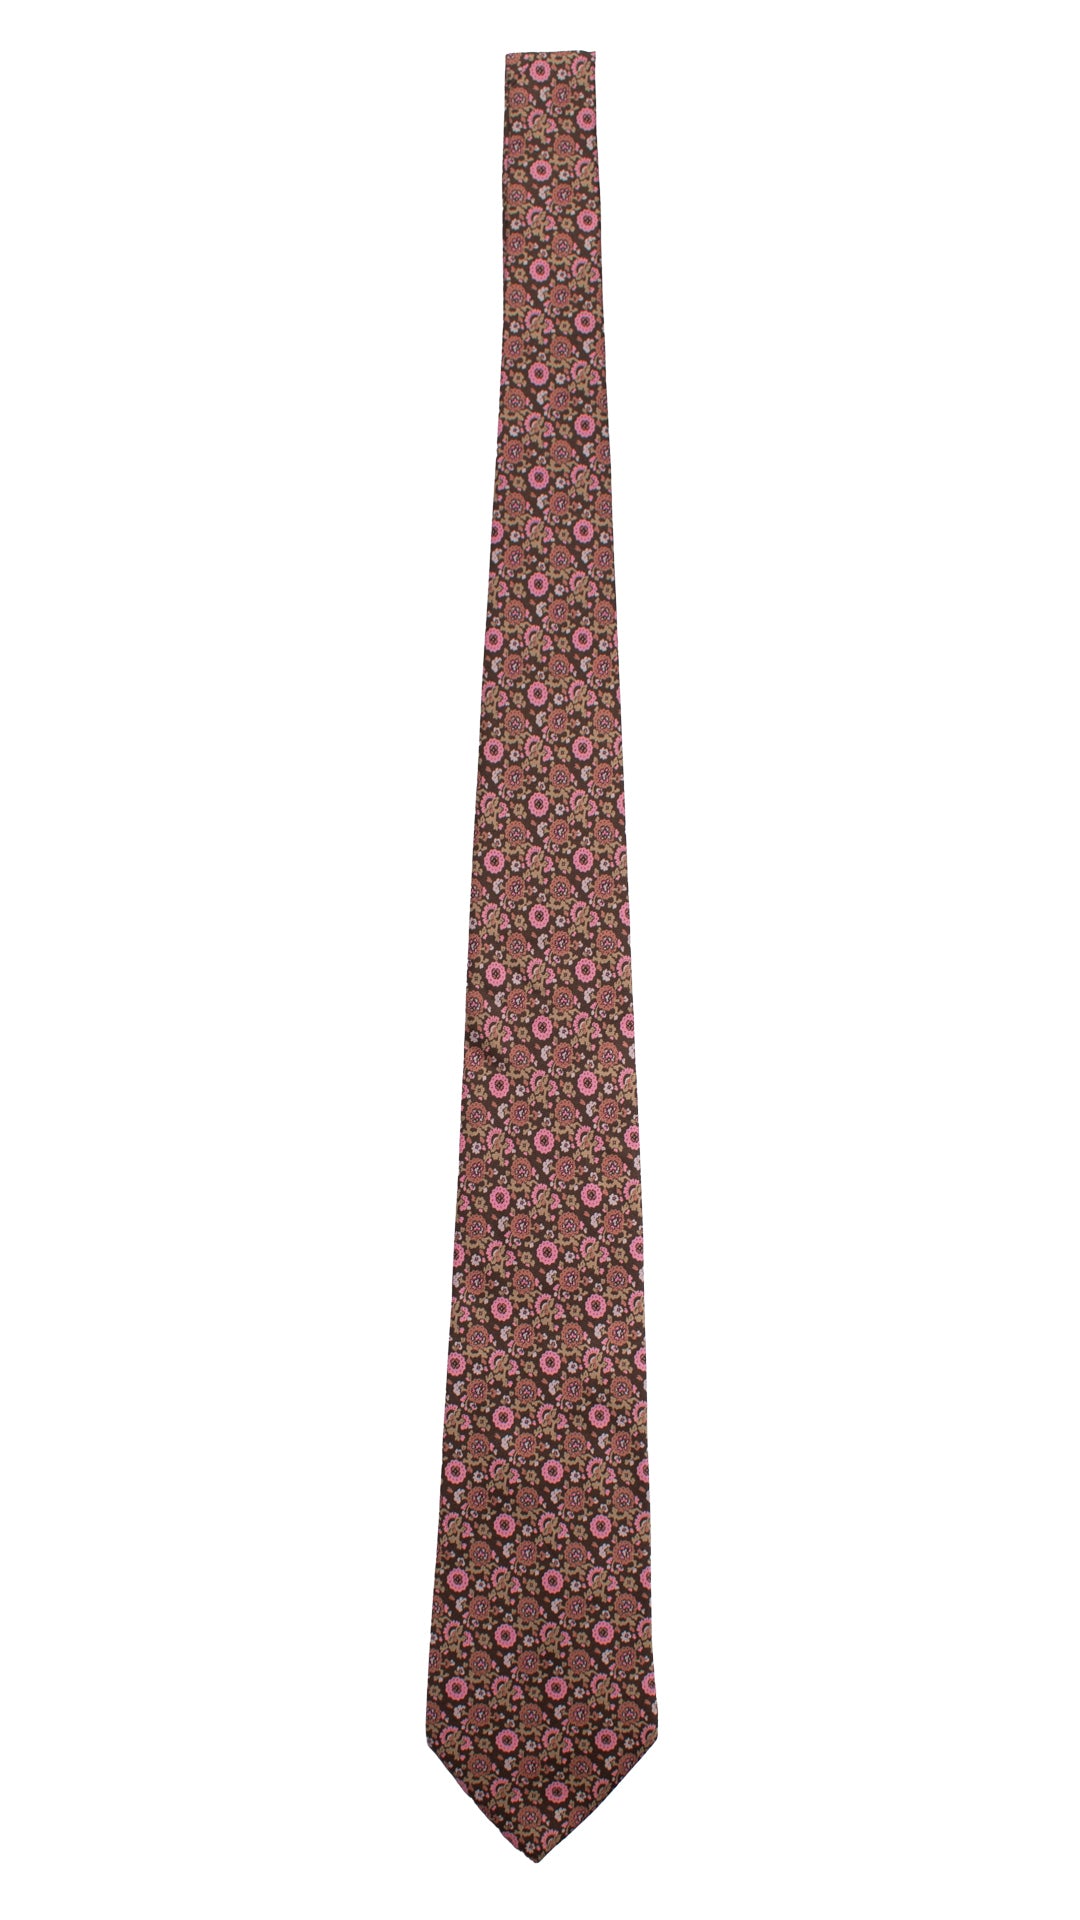 Cravatta Vintage in Twill di Seta Marrone A Fiori Rosa Rosa Antico Beige CV764 Intera